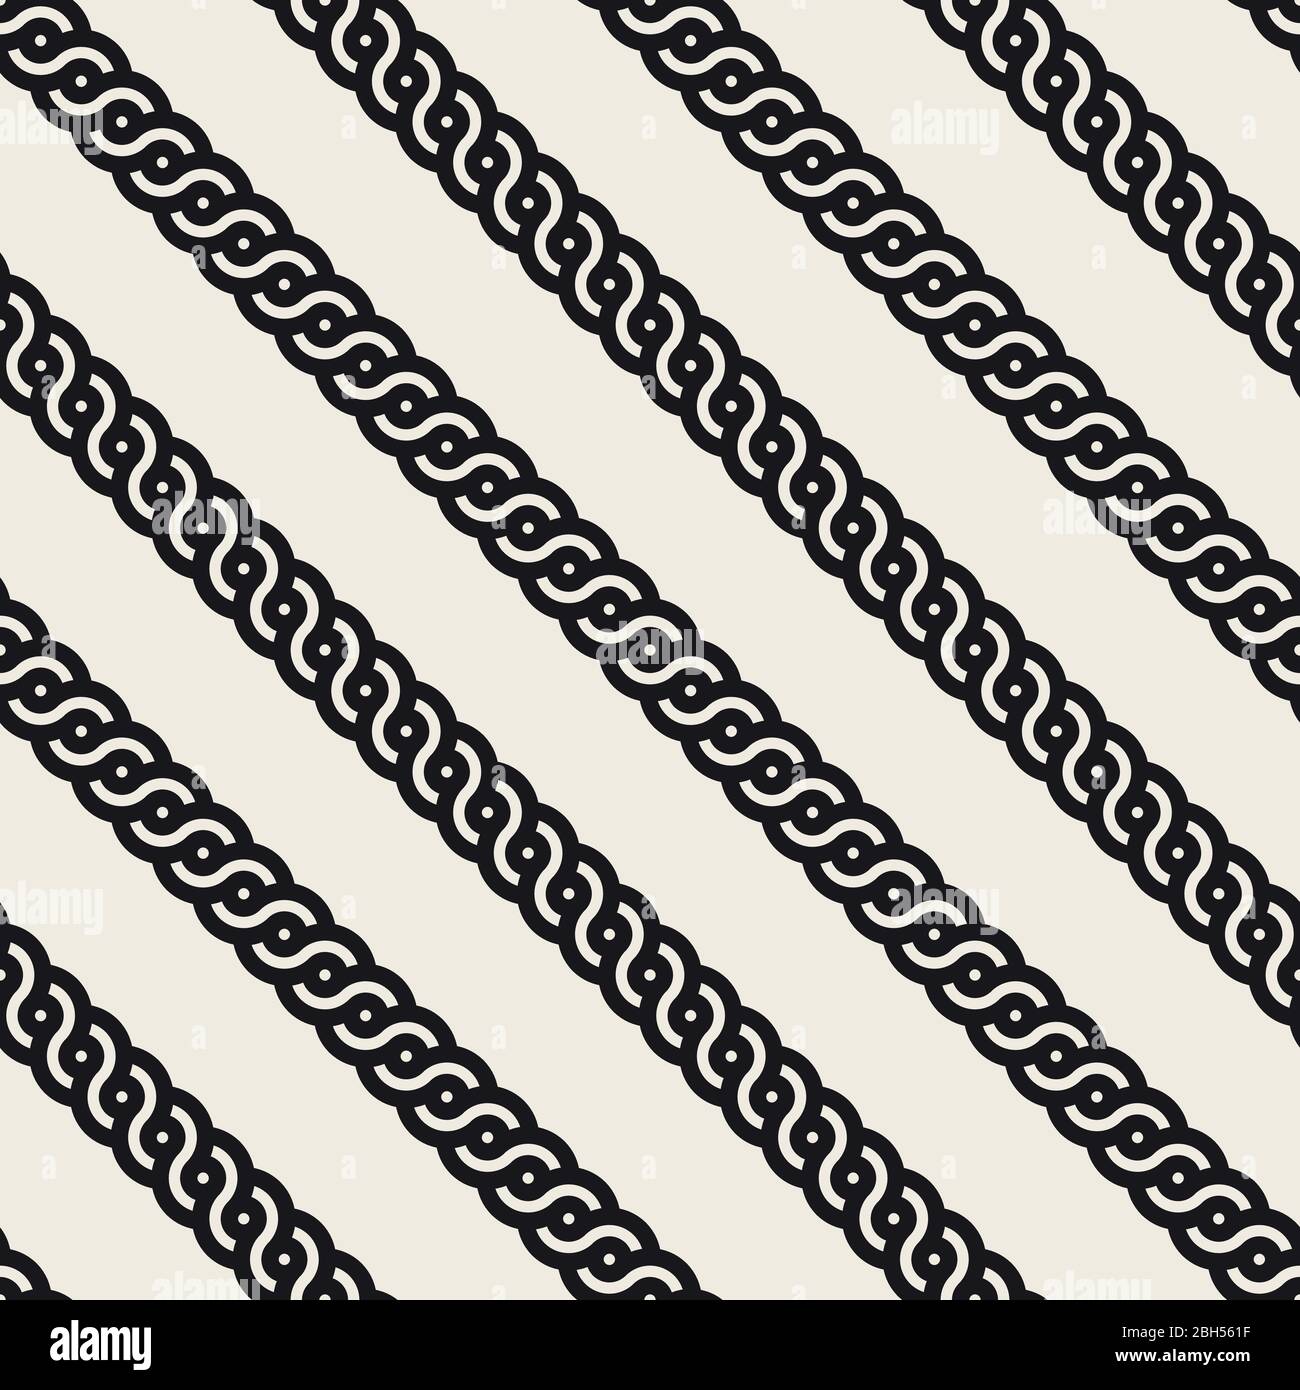 Vektor nahtlose Interlacing Linien Muster. Moderne stilvolle abstrakten Hintergrund. Wiederholtes geometrisches abgerundetes Streifenmuster. Stock Vektor